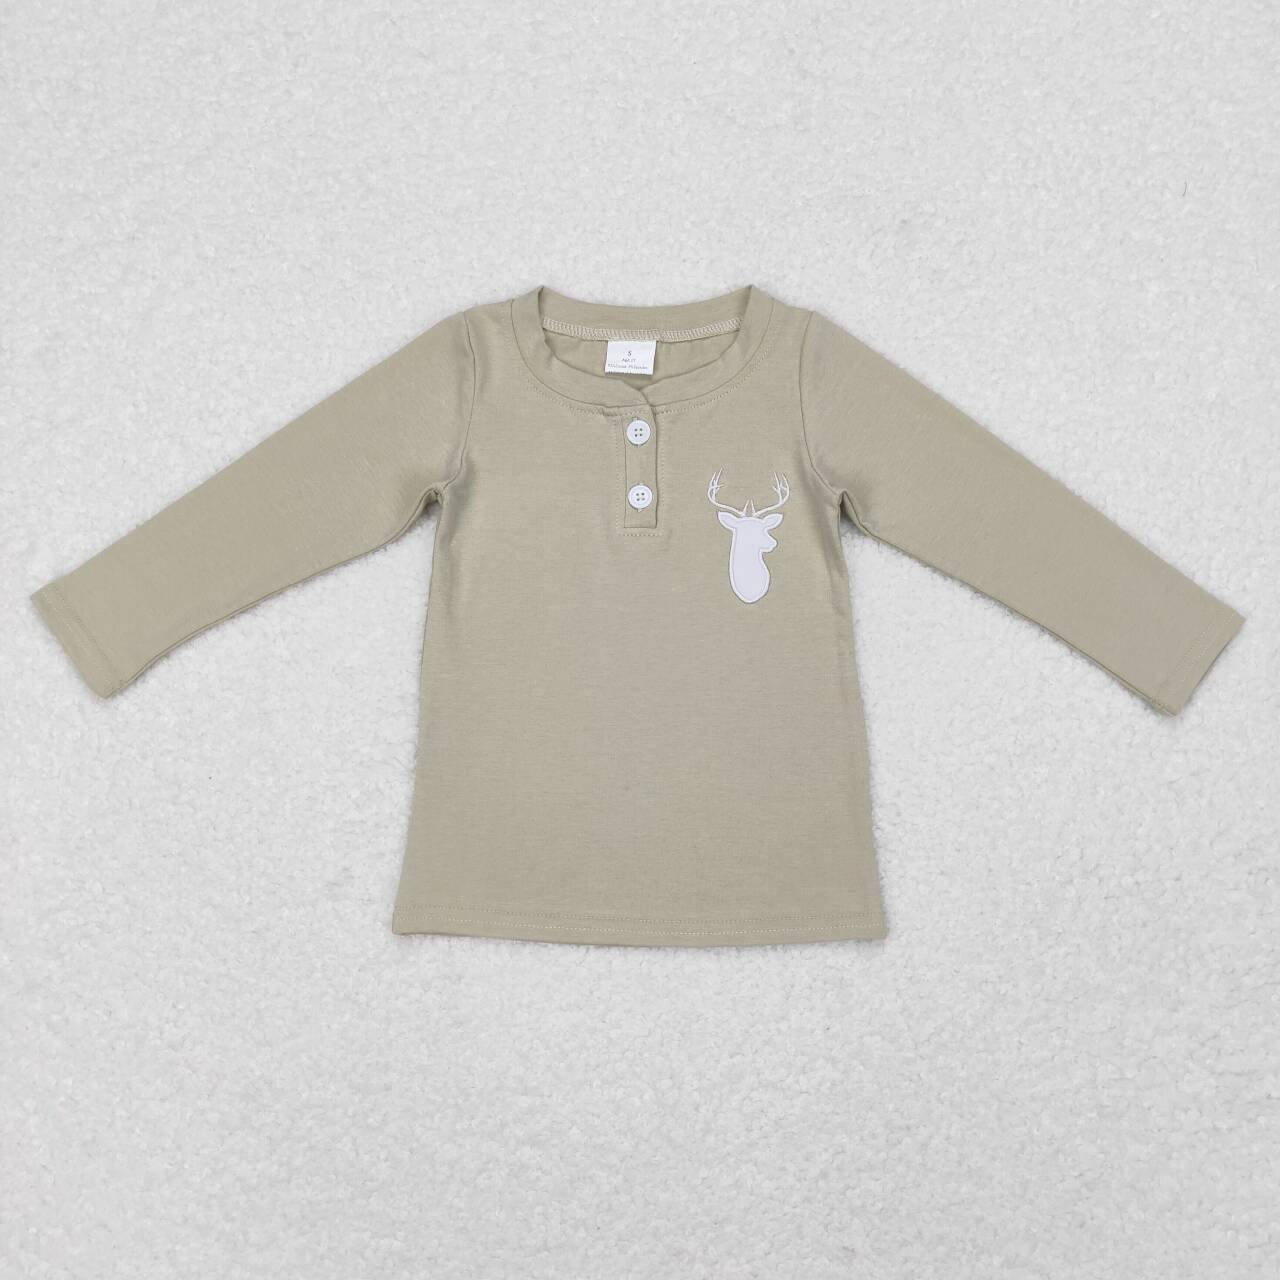 GT0352  Deer Embroidery Kids Buttons Tee Shirt Top